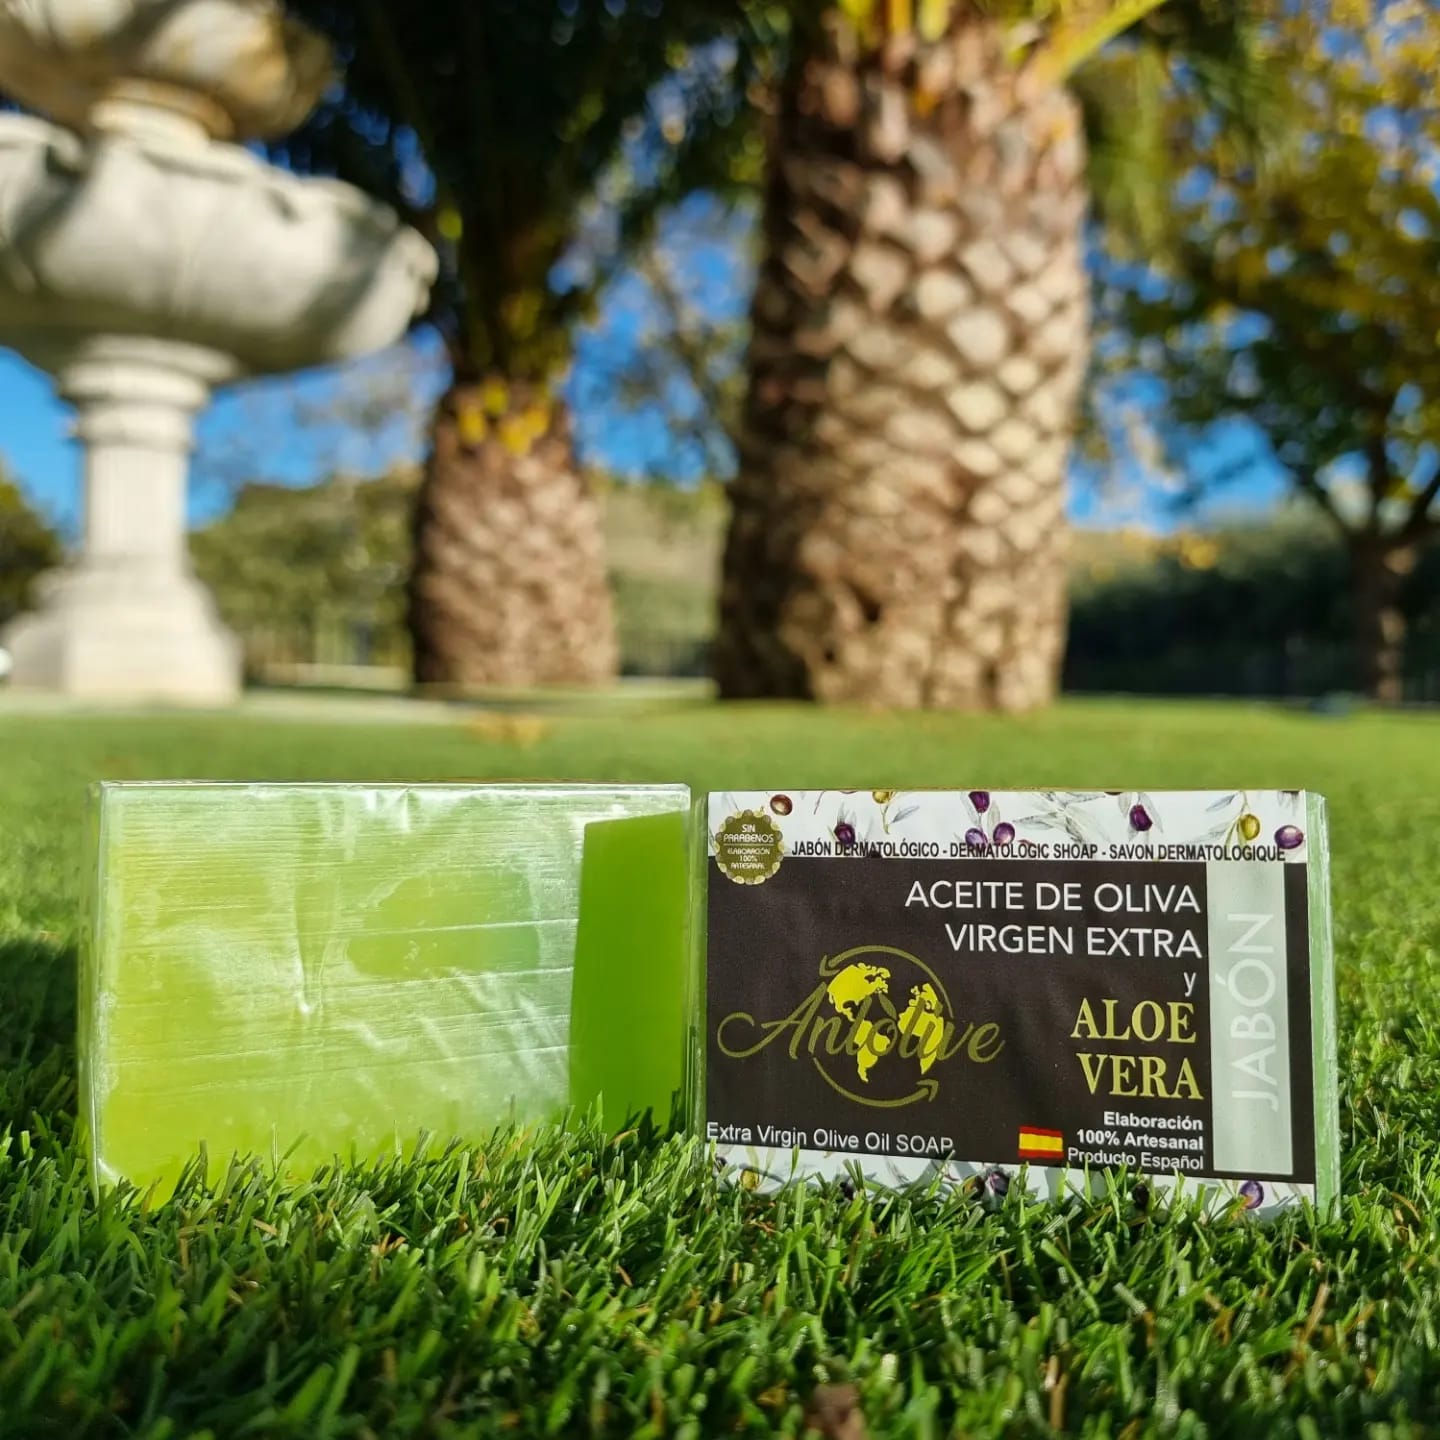 Anlolive Dermacare Revive : Savon à l'Aloe Vera et huile d'olive extra vierge pour votre peau